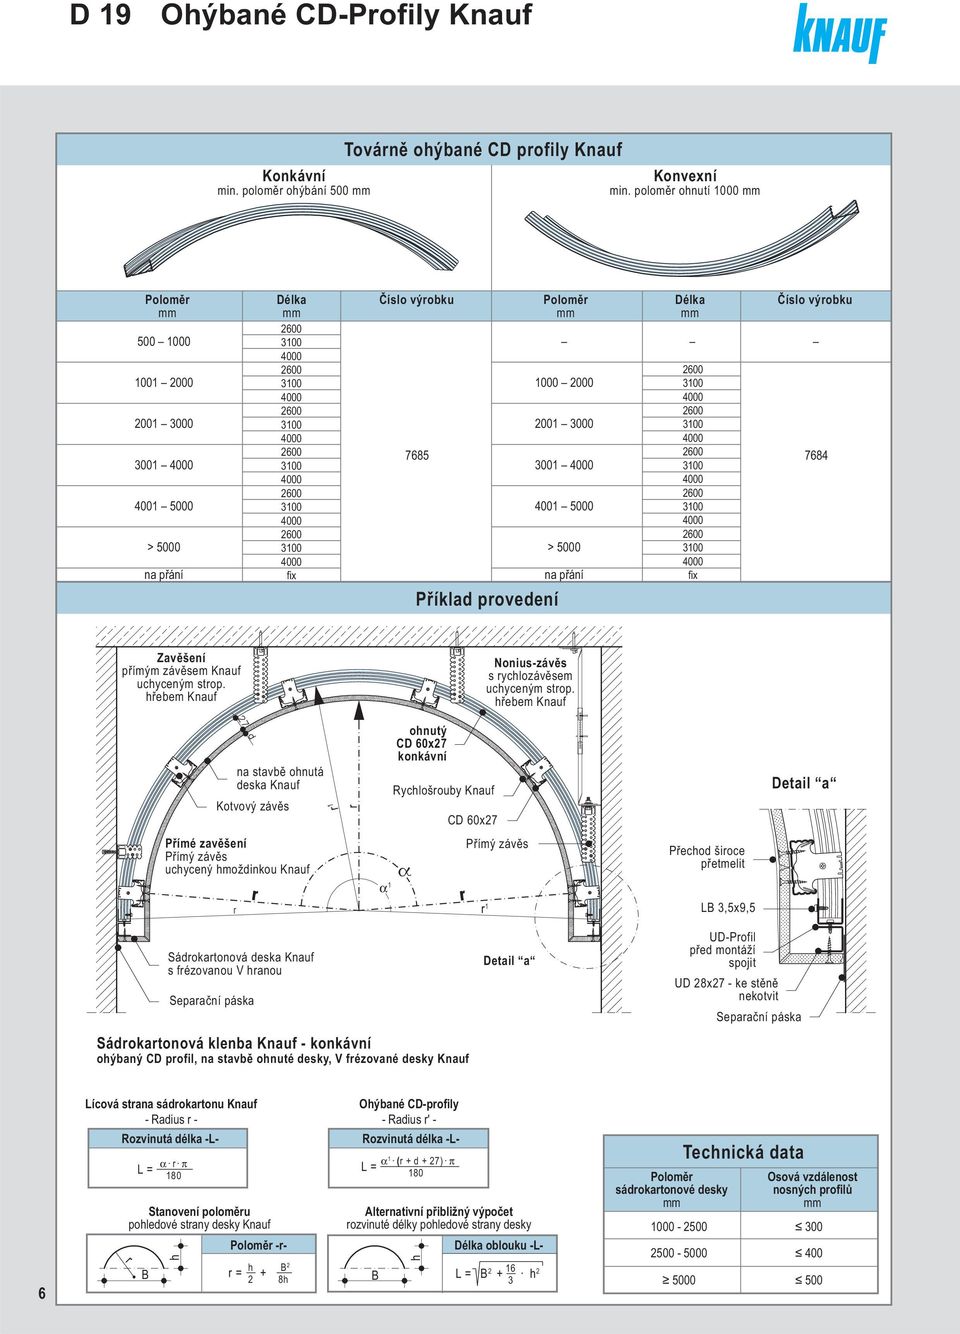 D 19 Knauf design - podhledy - PDF Stažení zdarma